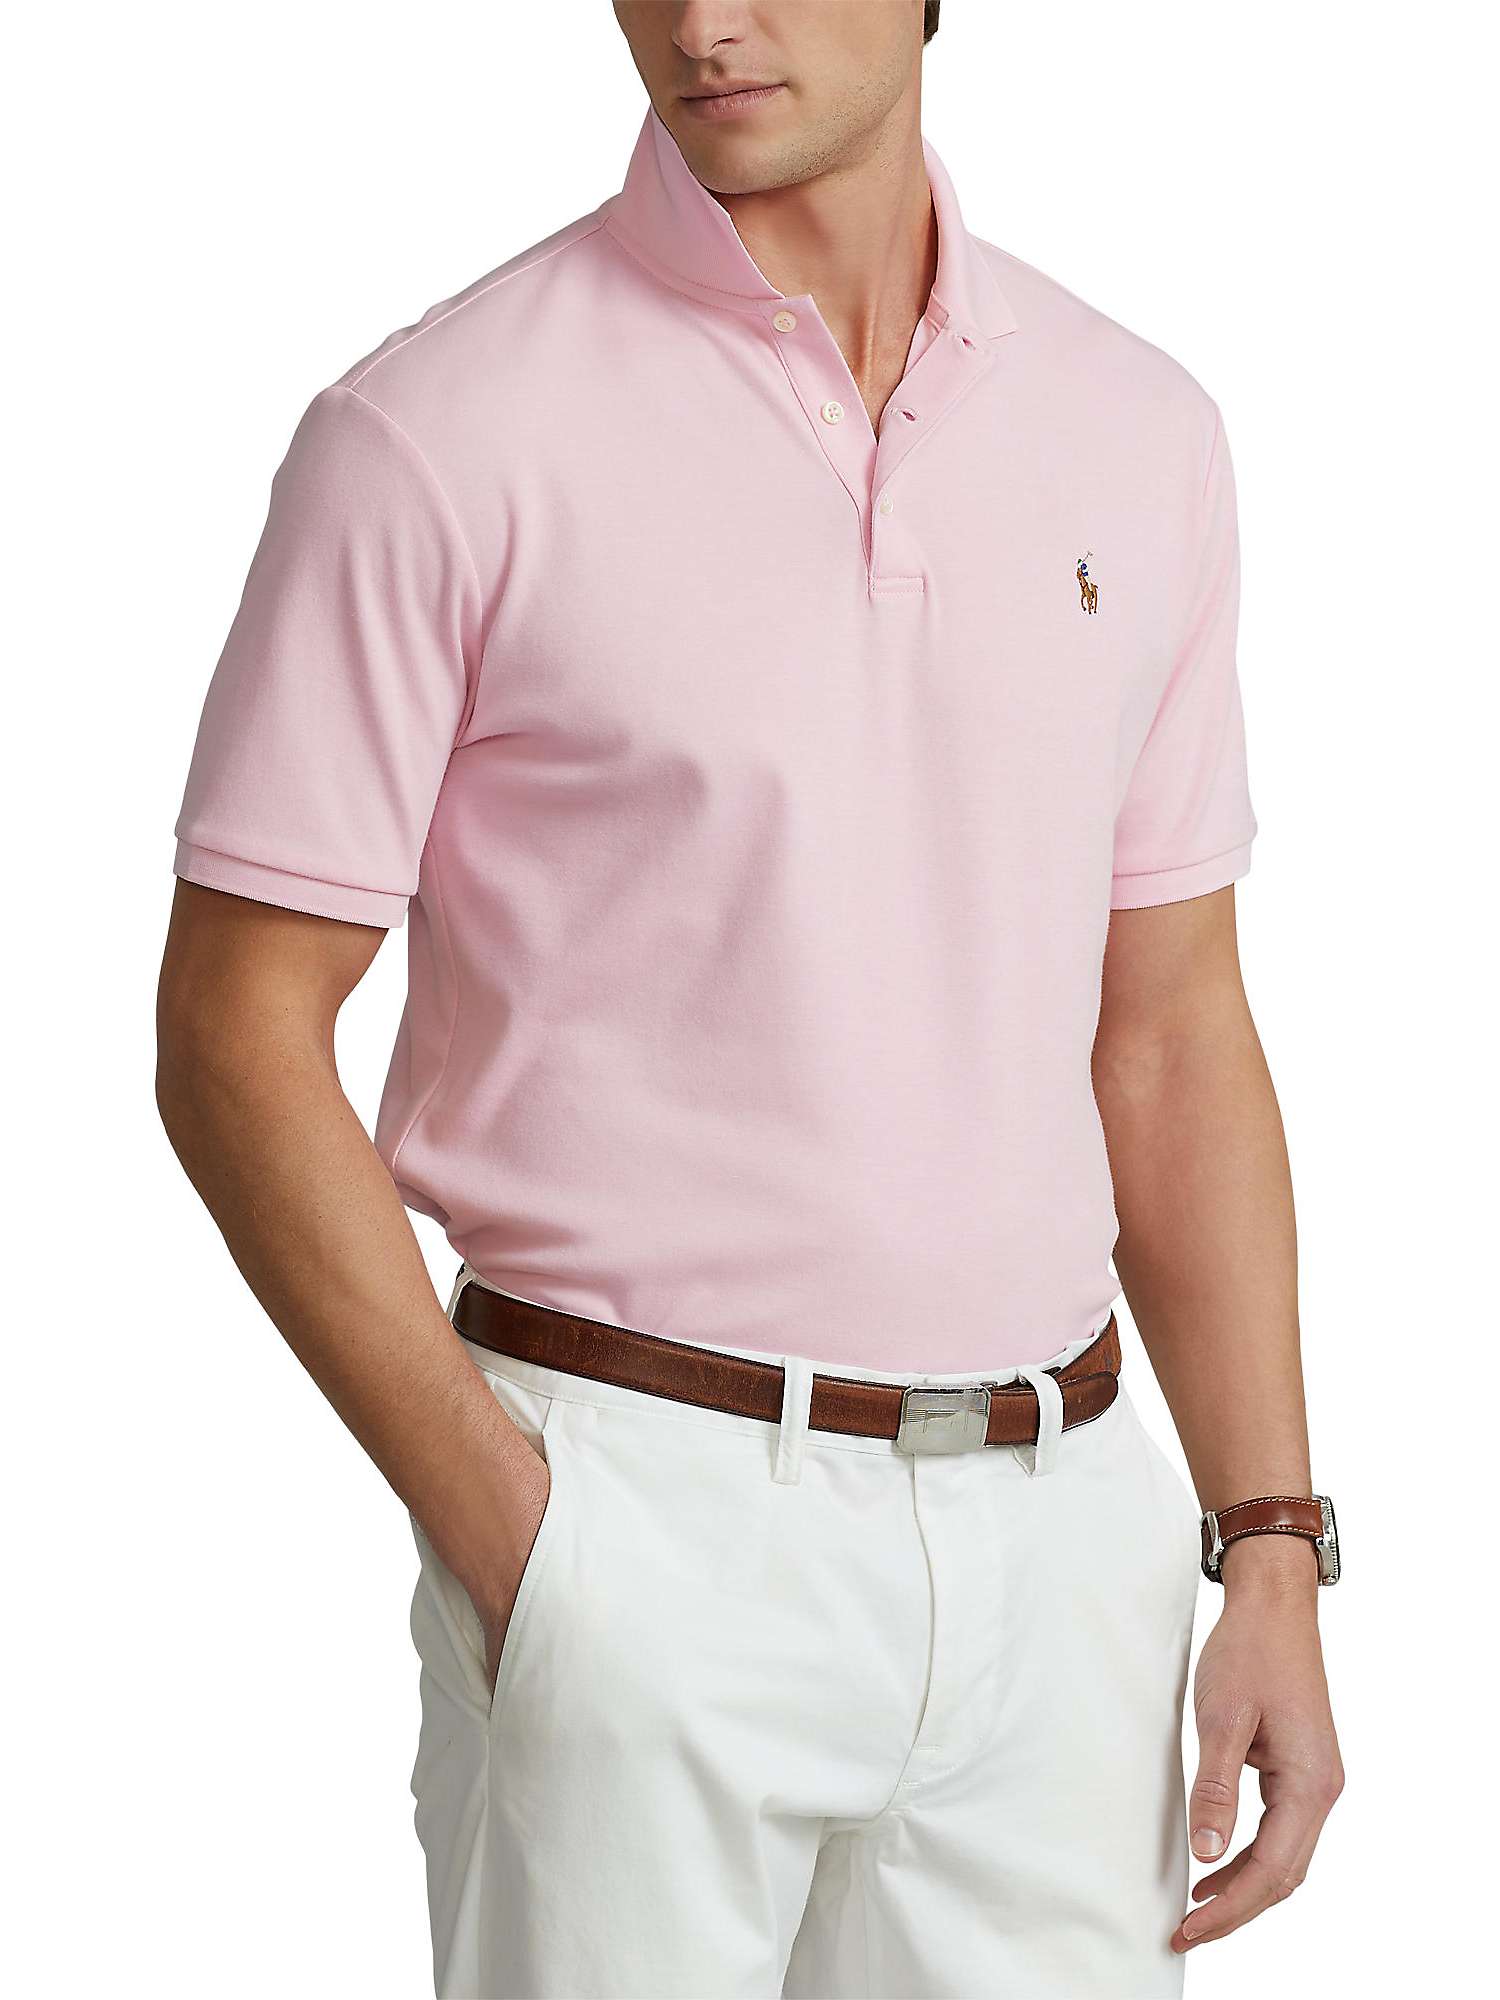 Top 88+ imagen pink polo ralph lauren shirt